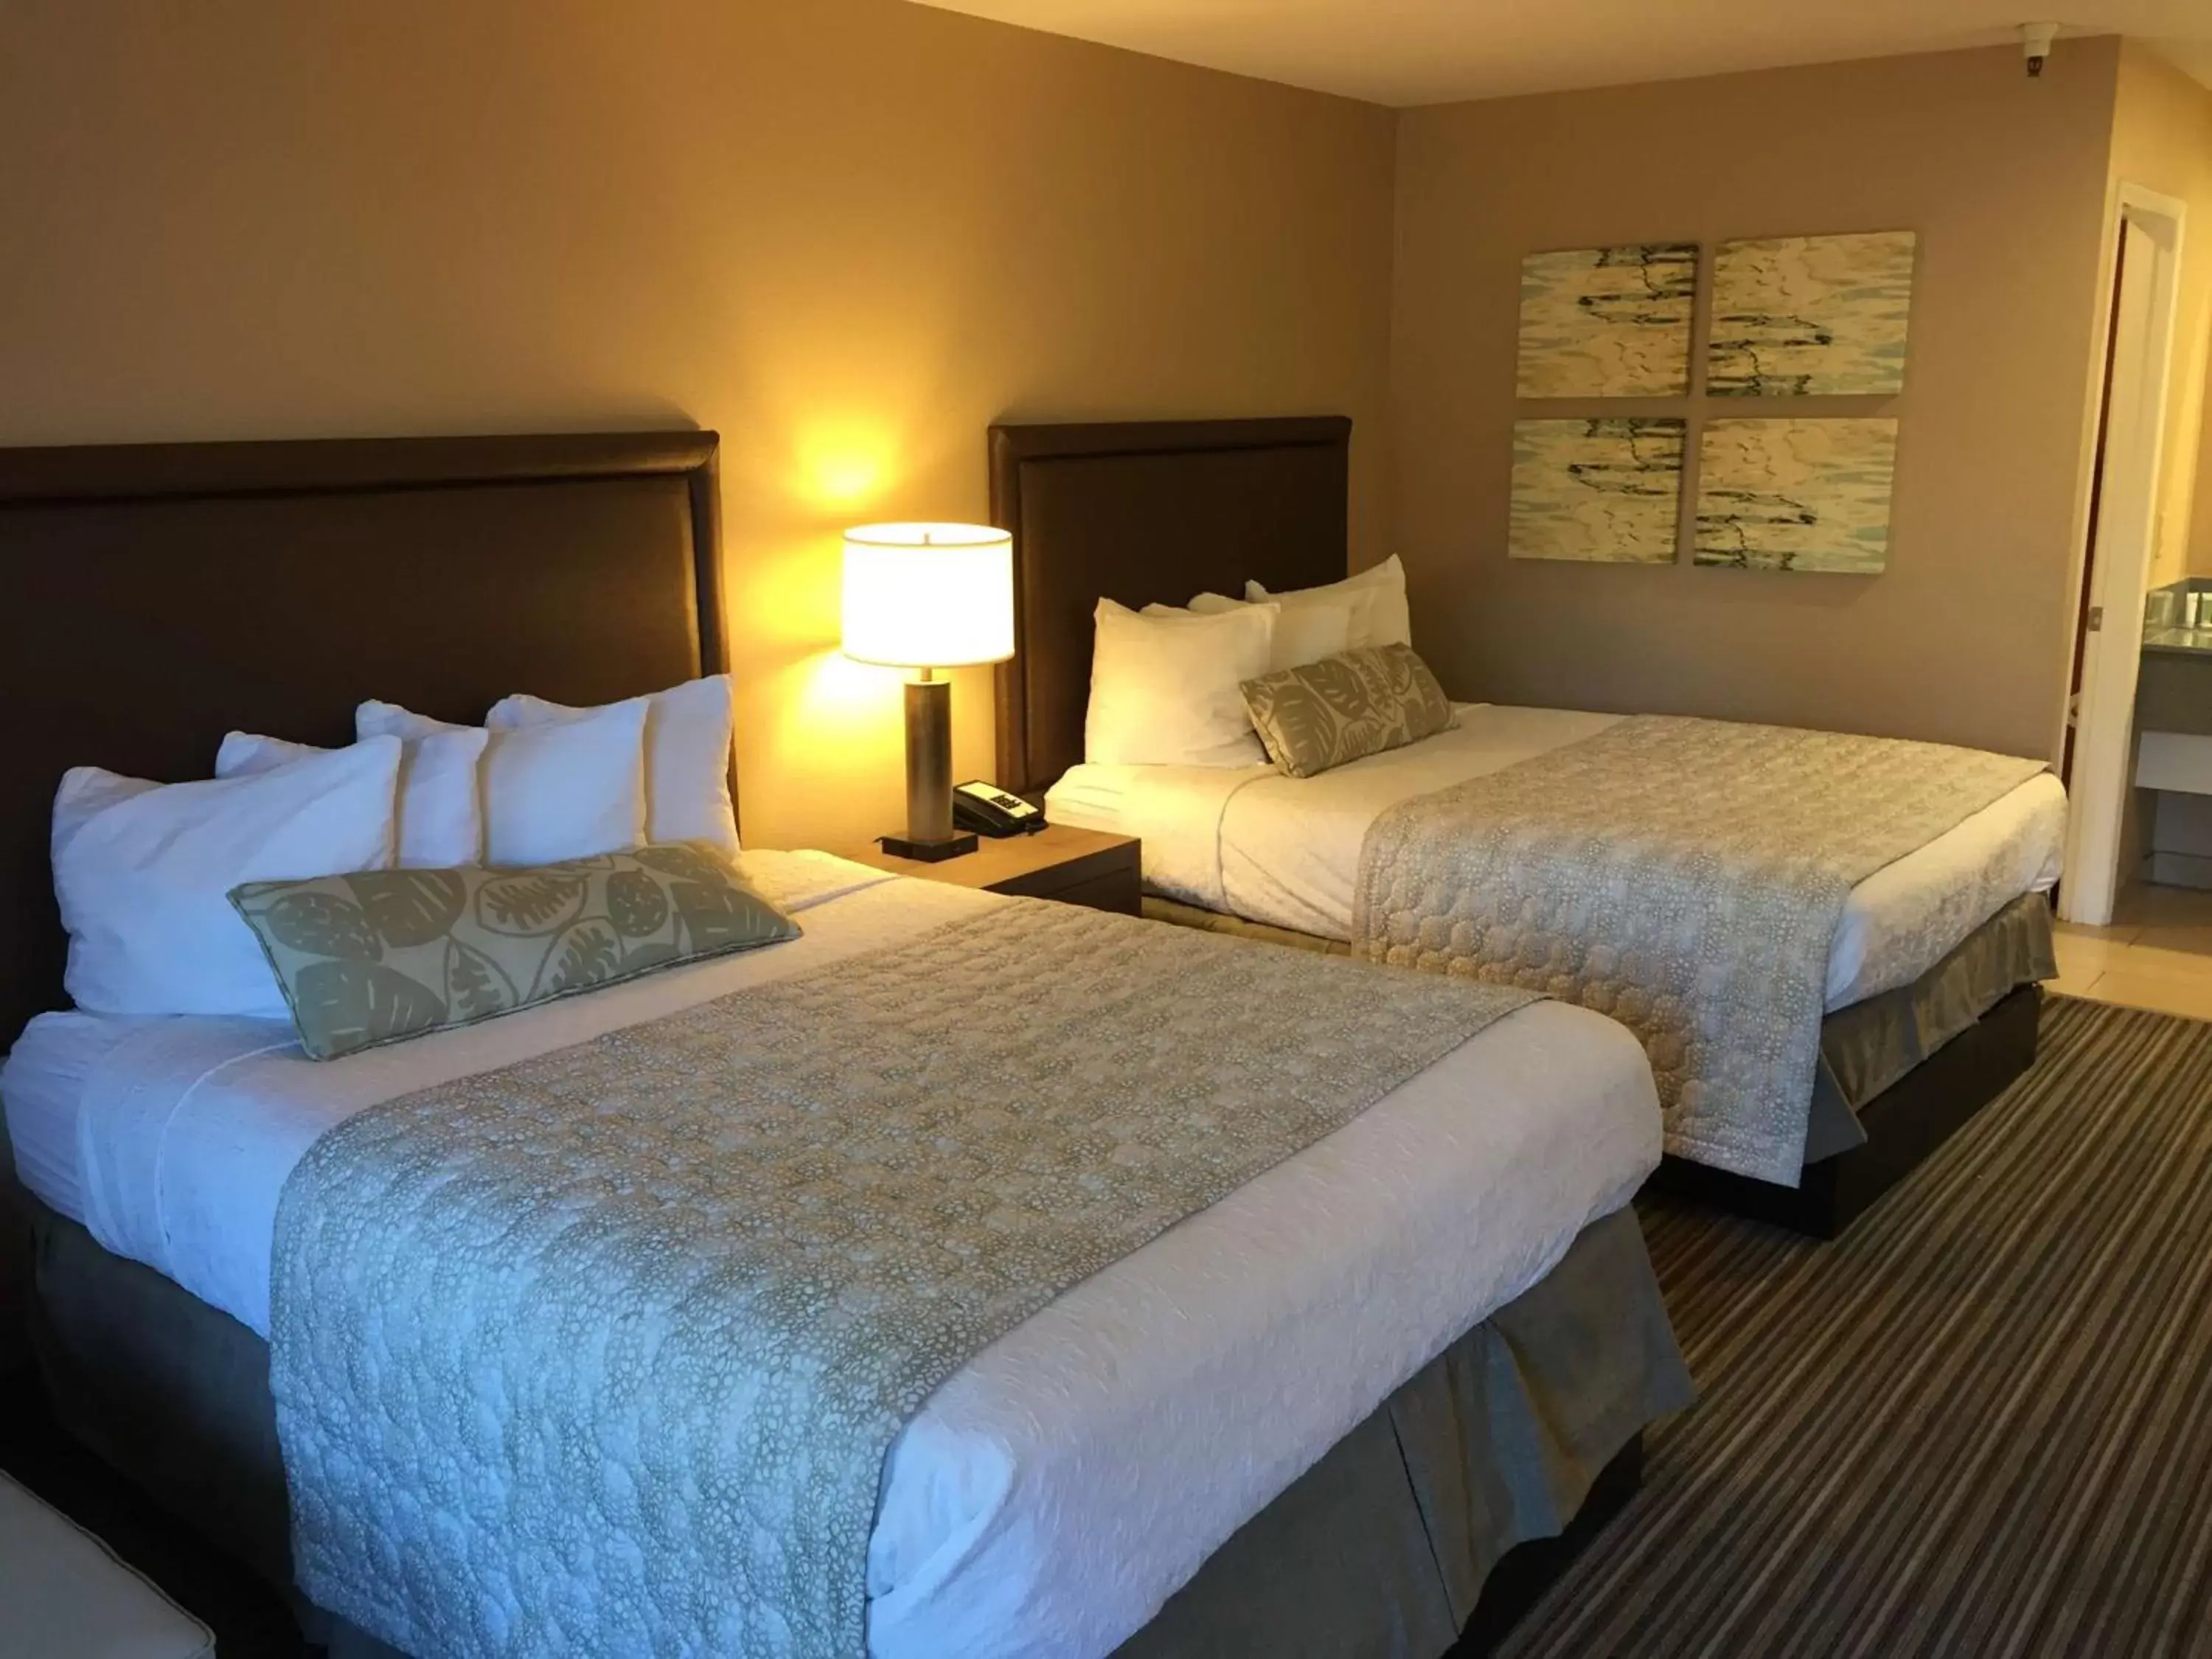 Bedroom, Bed in Best Western Plus Inn Scotts Valley